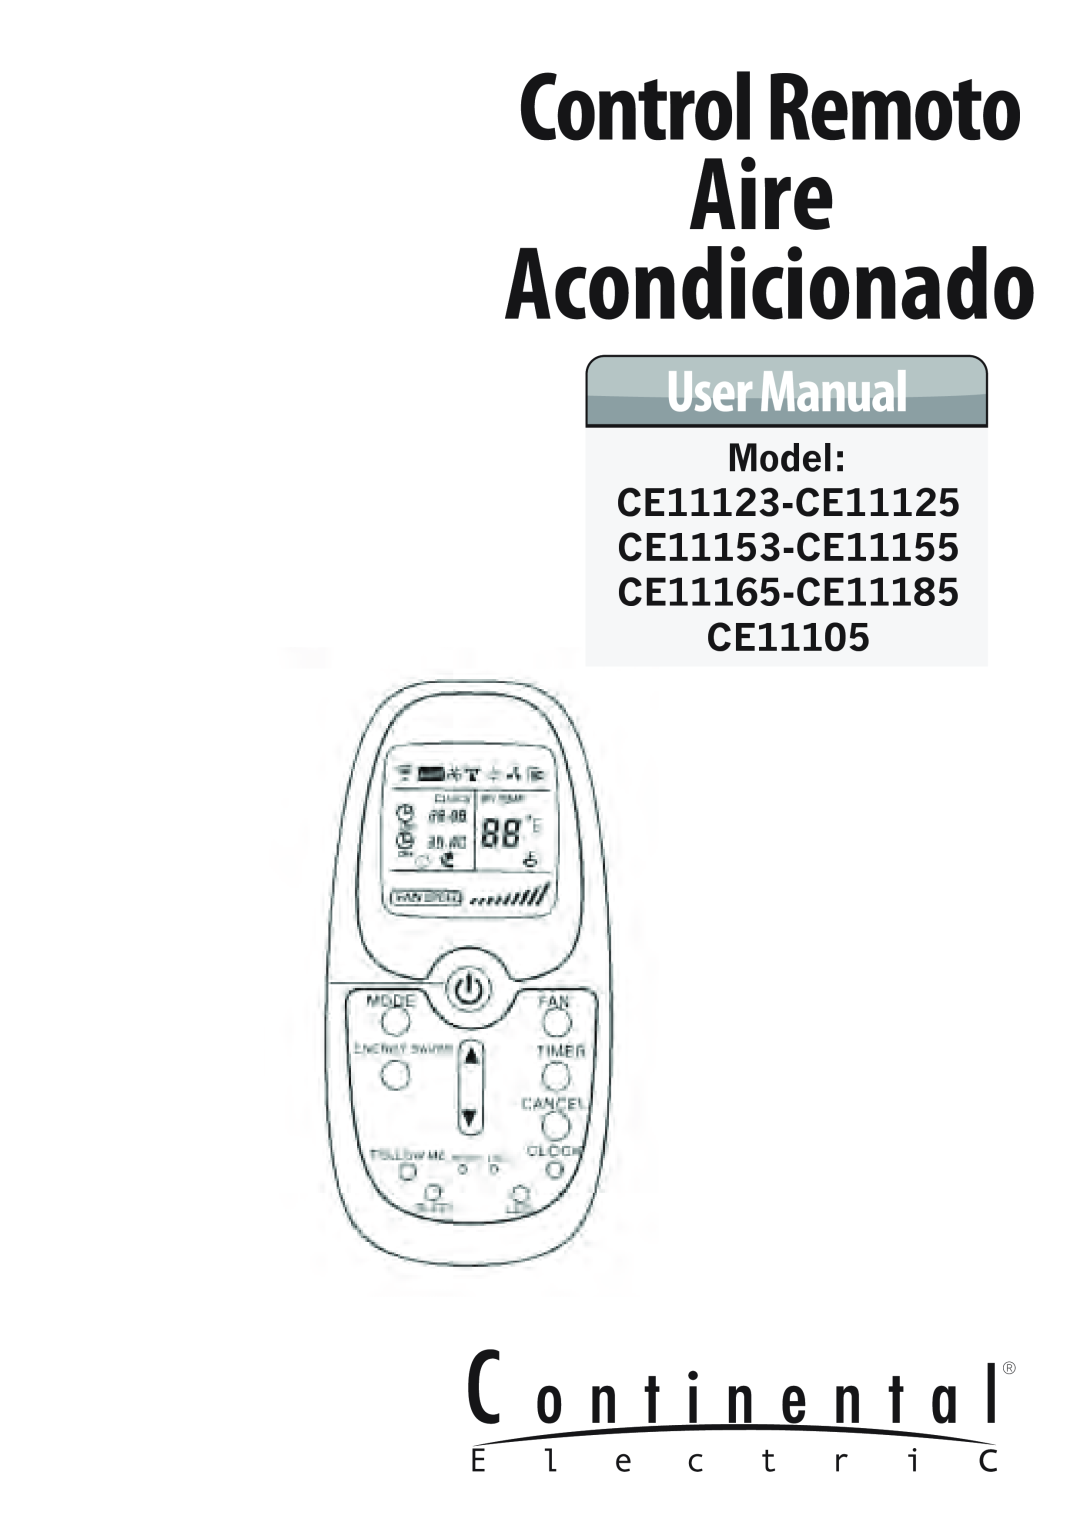 Continental Electric CE11155, CE11125, CE11153, CE11105, CE11185, CE11165 Aire, Acondicionado, Control Remoto, User Manual 